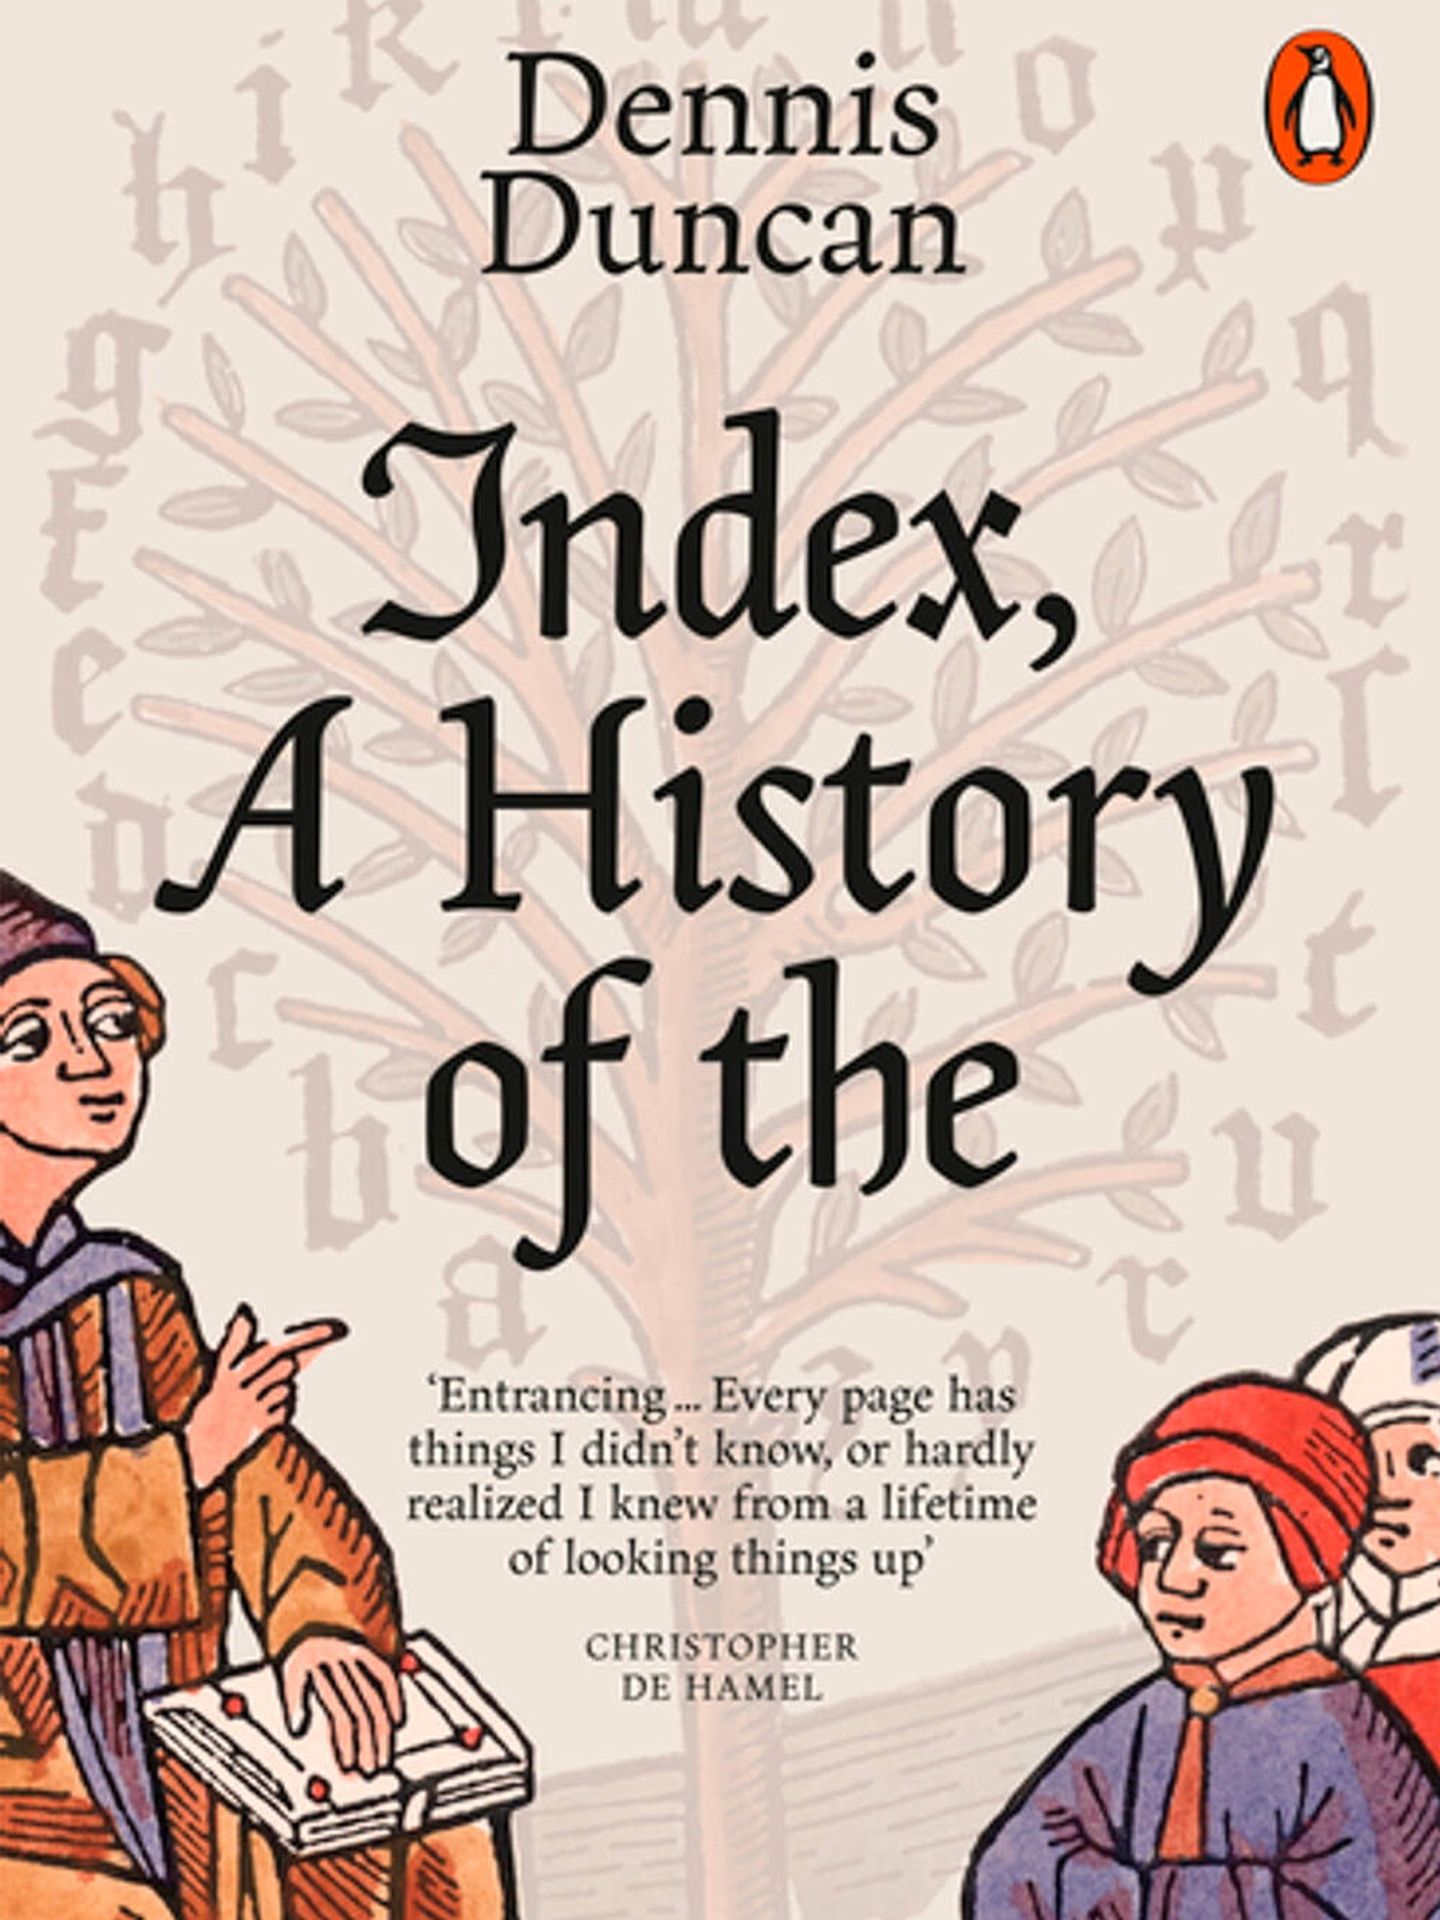 Portada de 'Index, a History of', de Dennis Duncan.